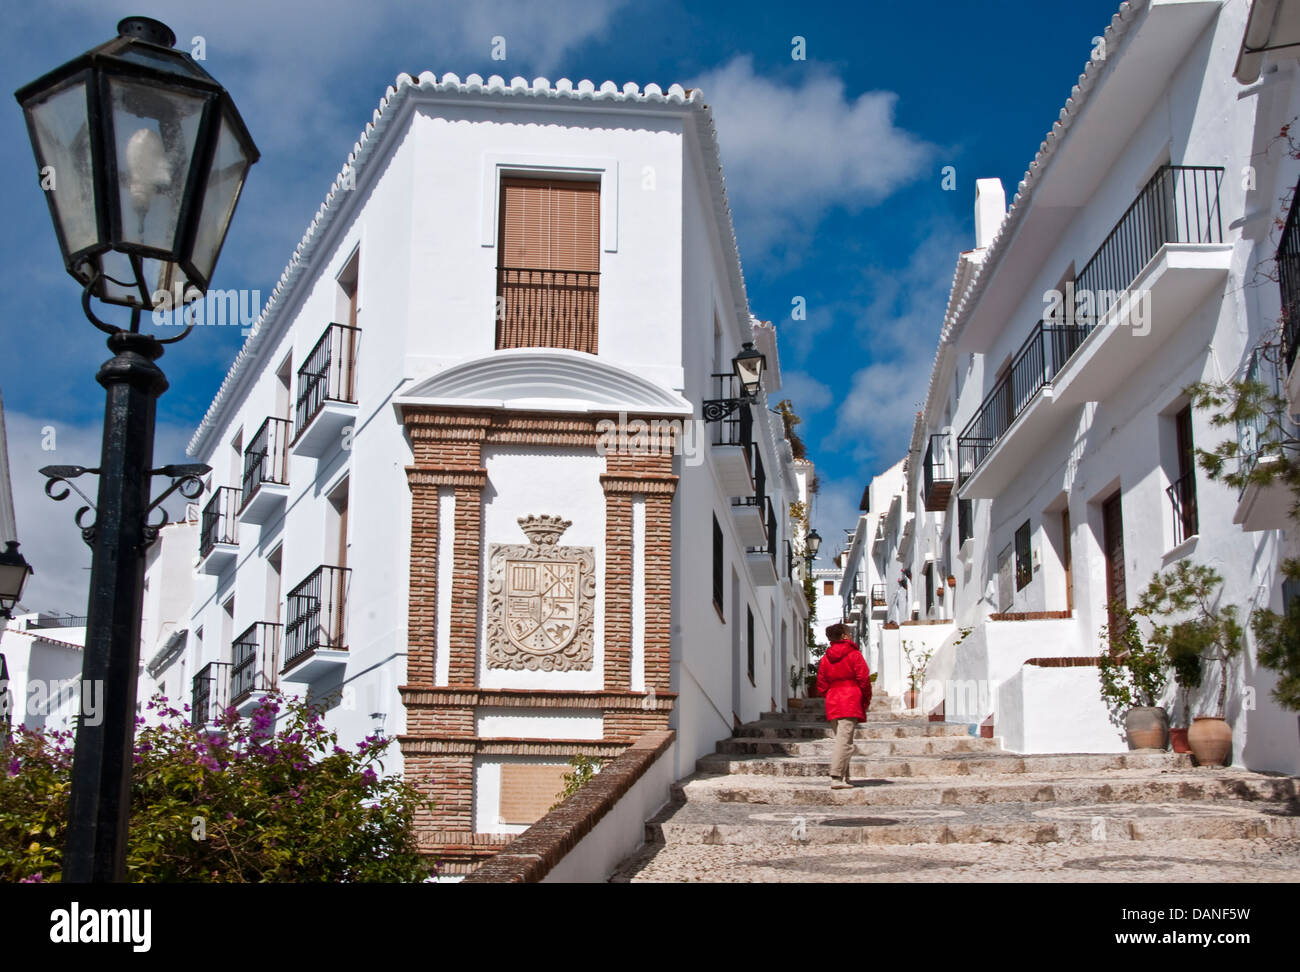 Frigiliana, village blanc d'Andalousie, sur la Costa del Sol, Espagne. Banque D'Images